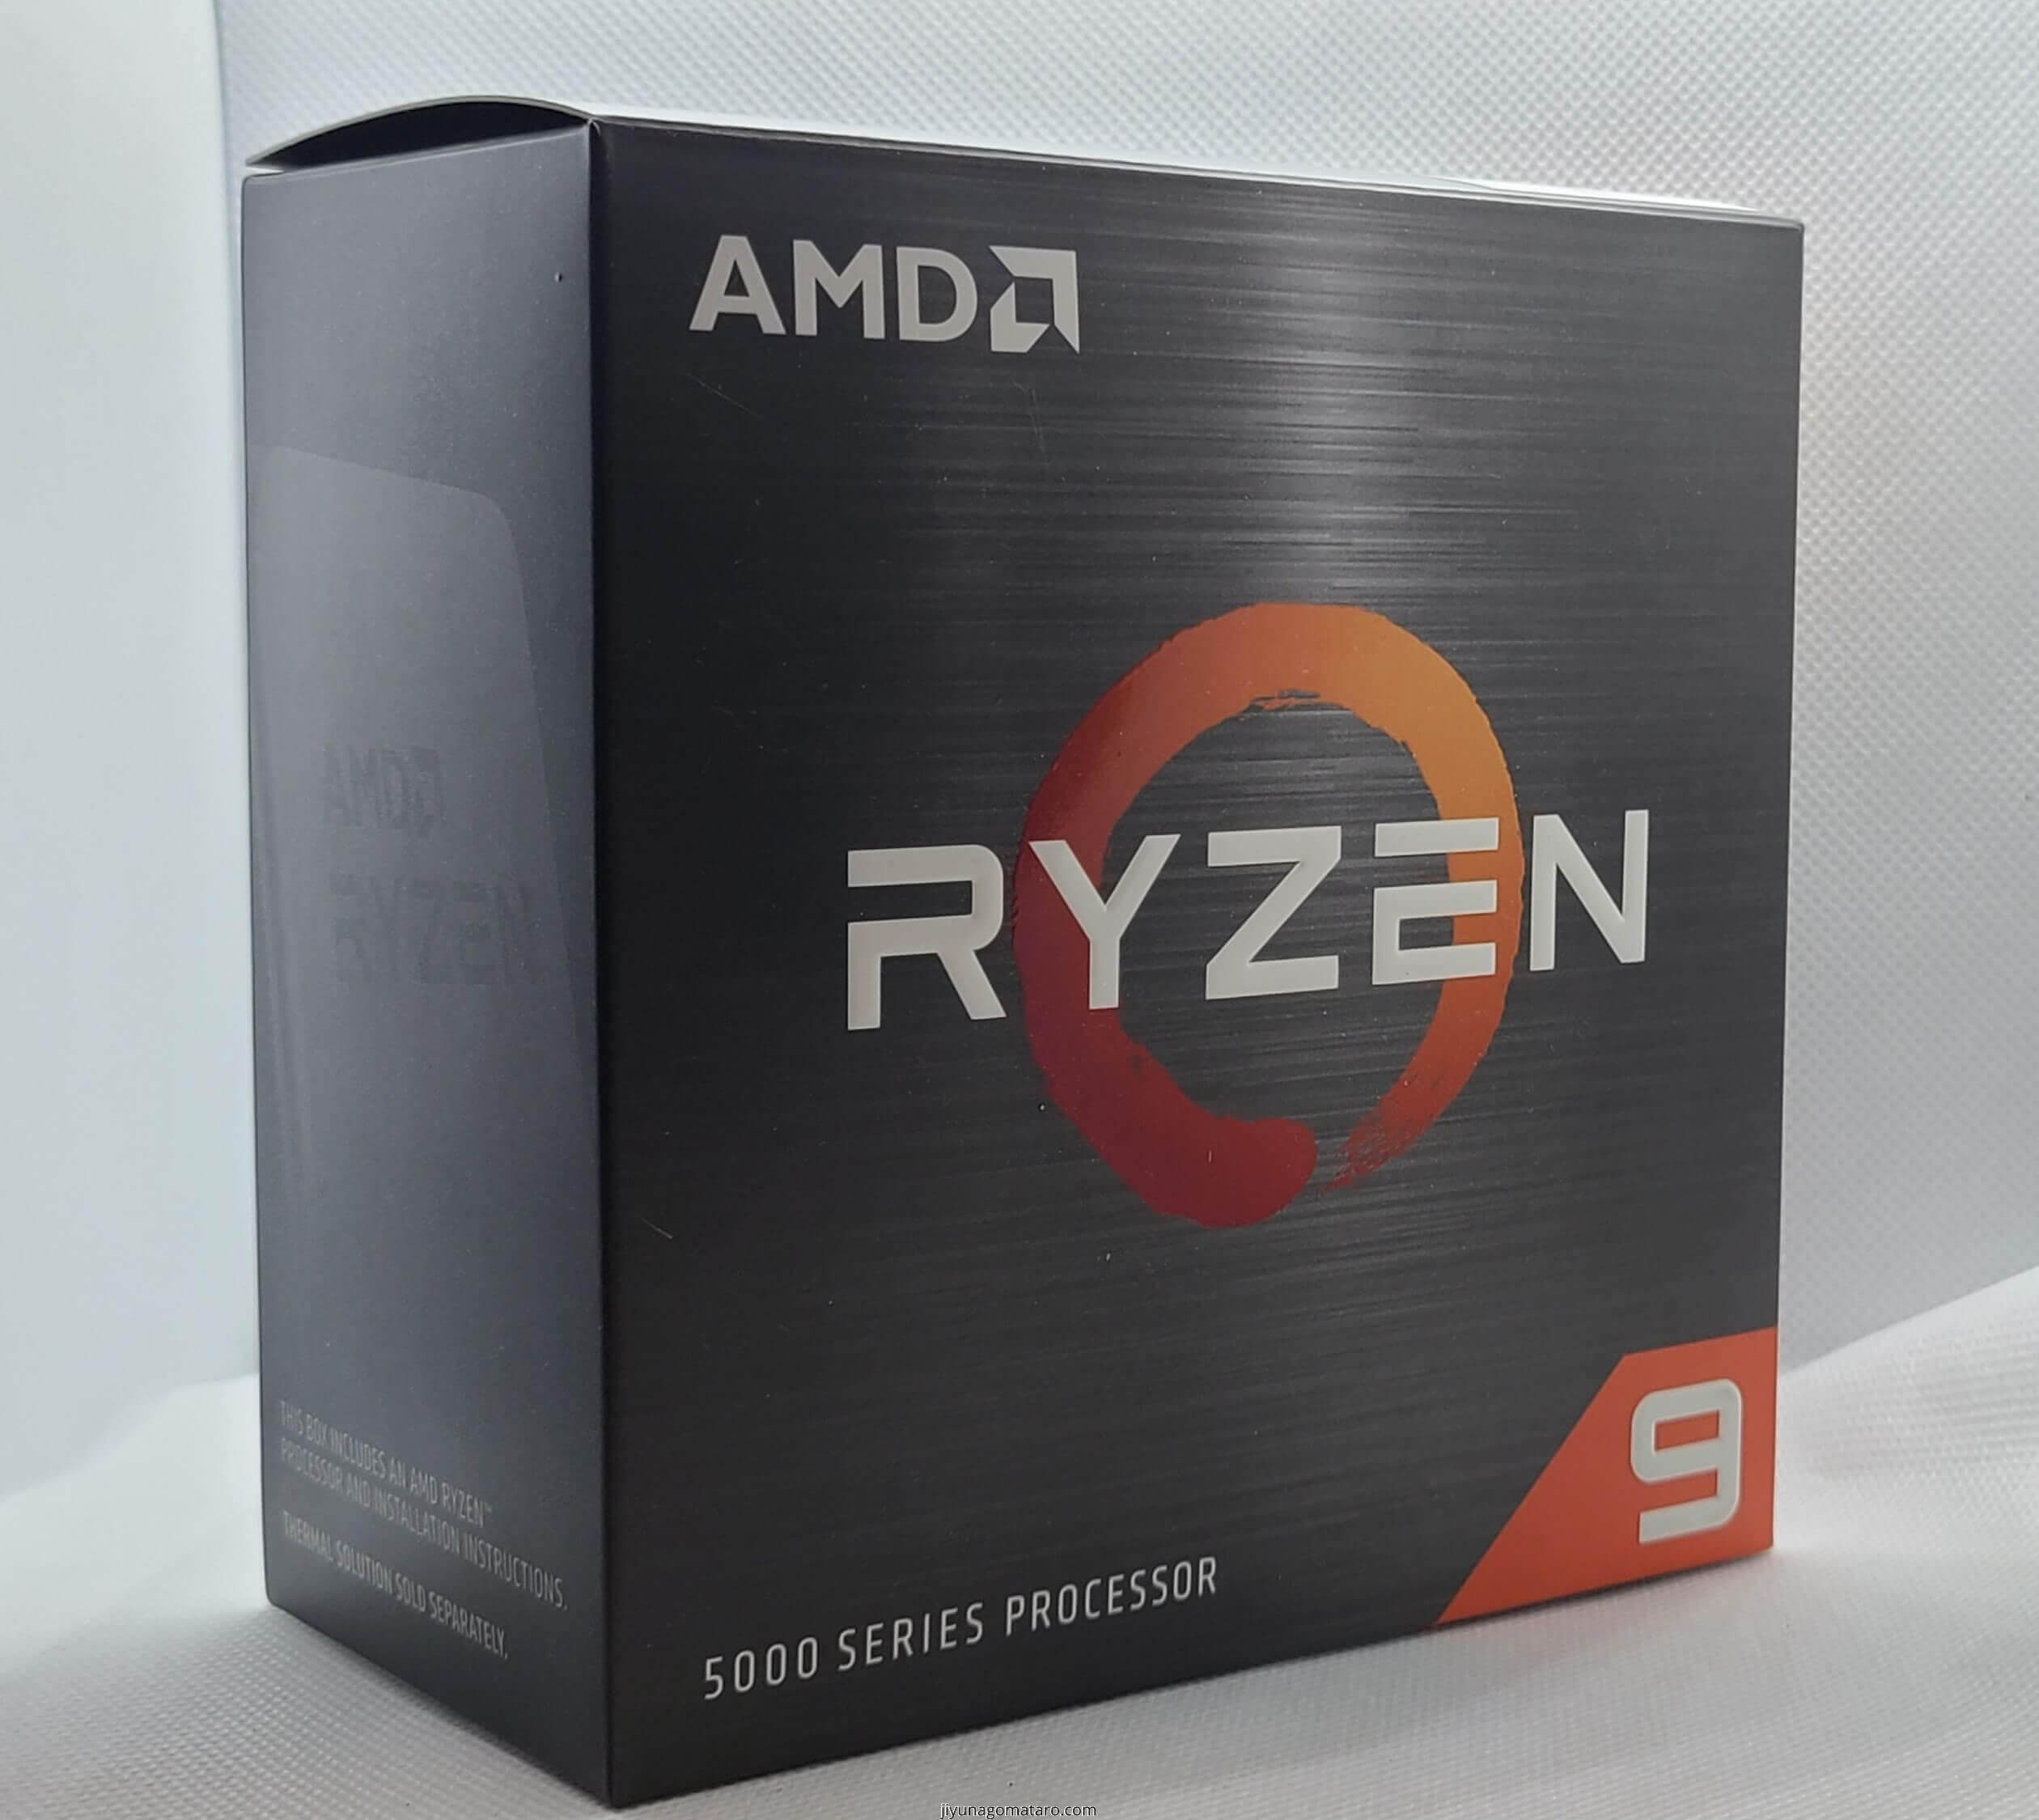 Ryzen9 5900x 【AMD CPU】